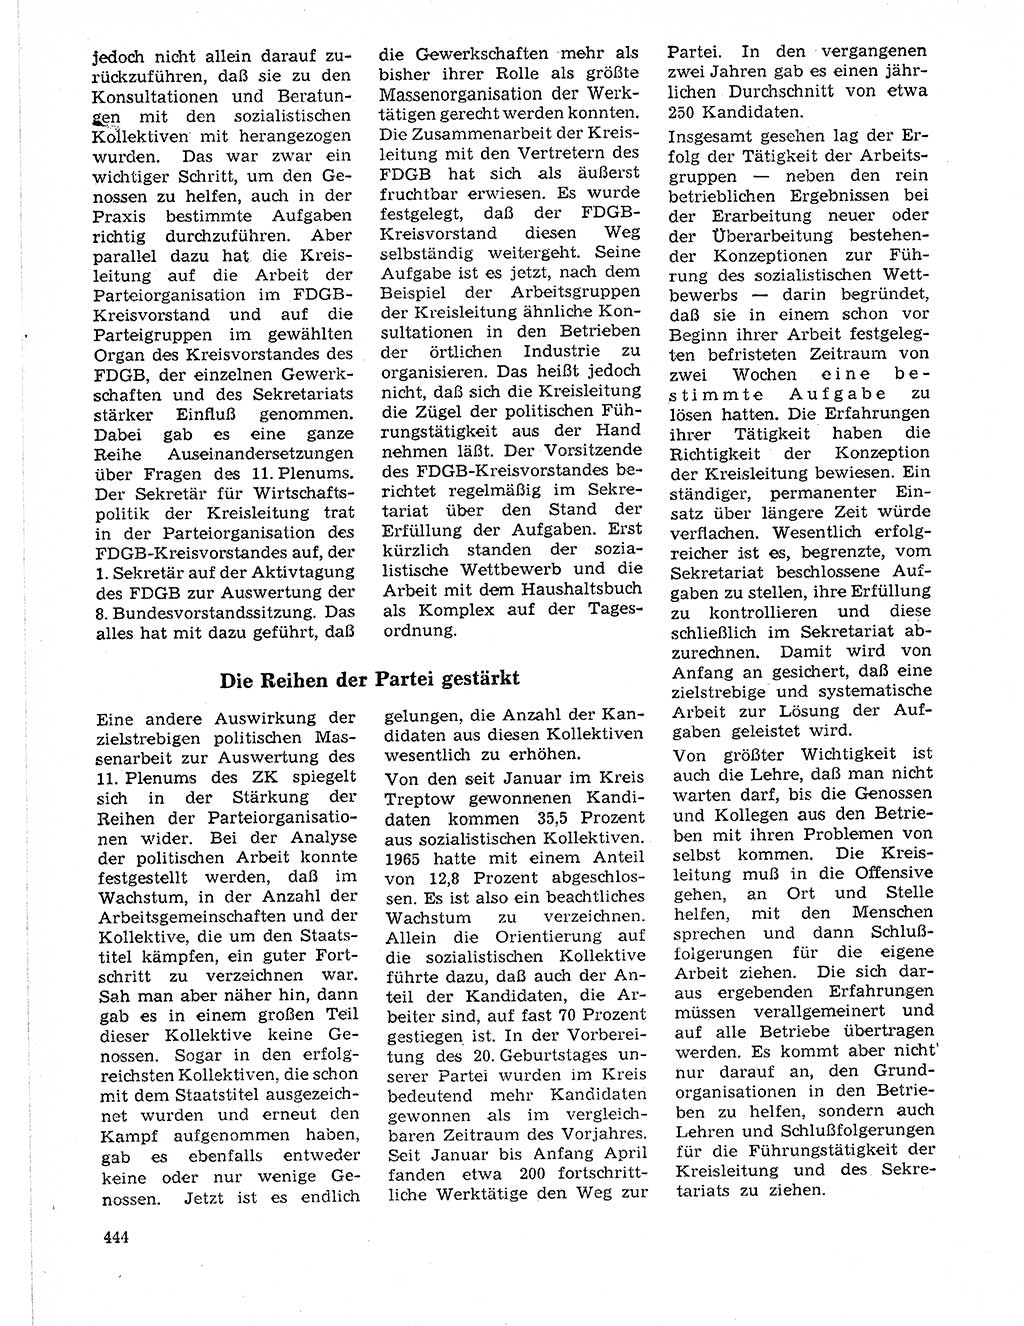 Neuer Weg (NW), Organ des Zentralkomitees (ZK) der SED (Sozialistische Einheitspartei Deutschlands) für Fragen des Parteilebens, 21. Jahrgang [Deutsche Demokratische Republik (DDR)] 1966, Seite 444 (NW ZK SED DDR 1966, S. 444)